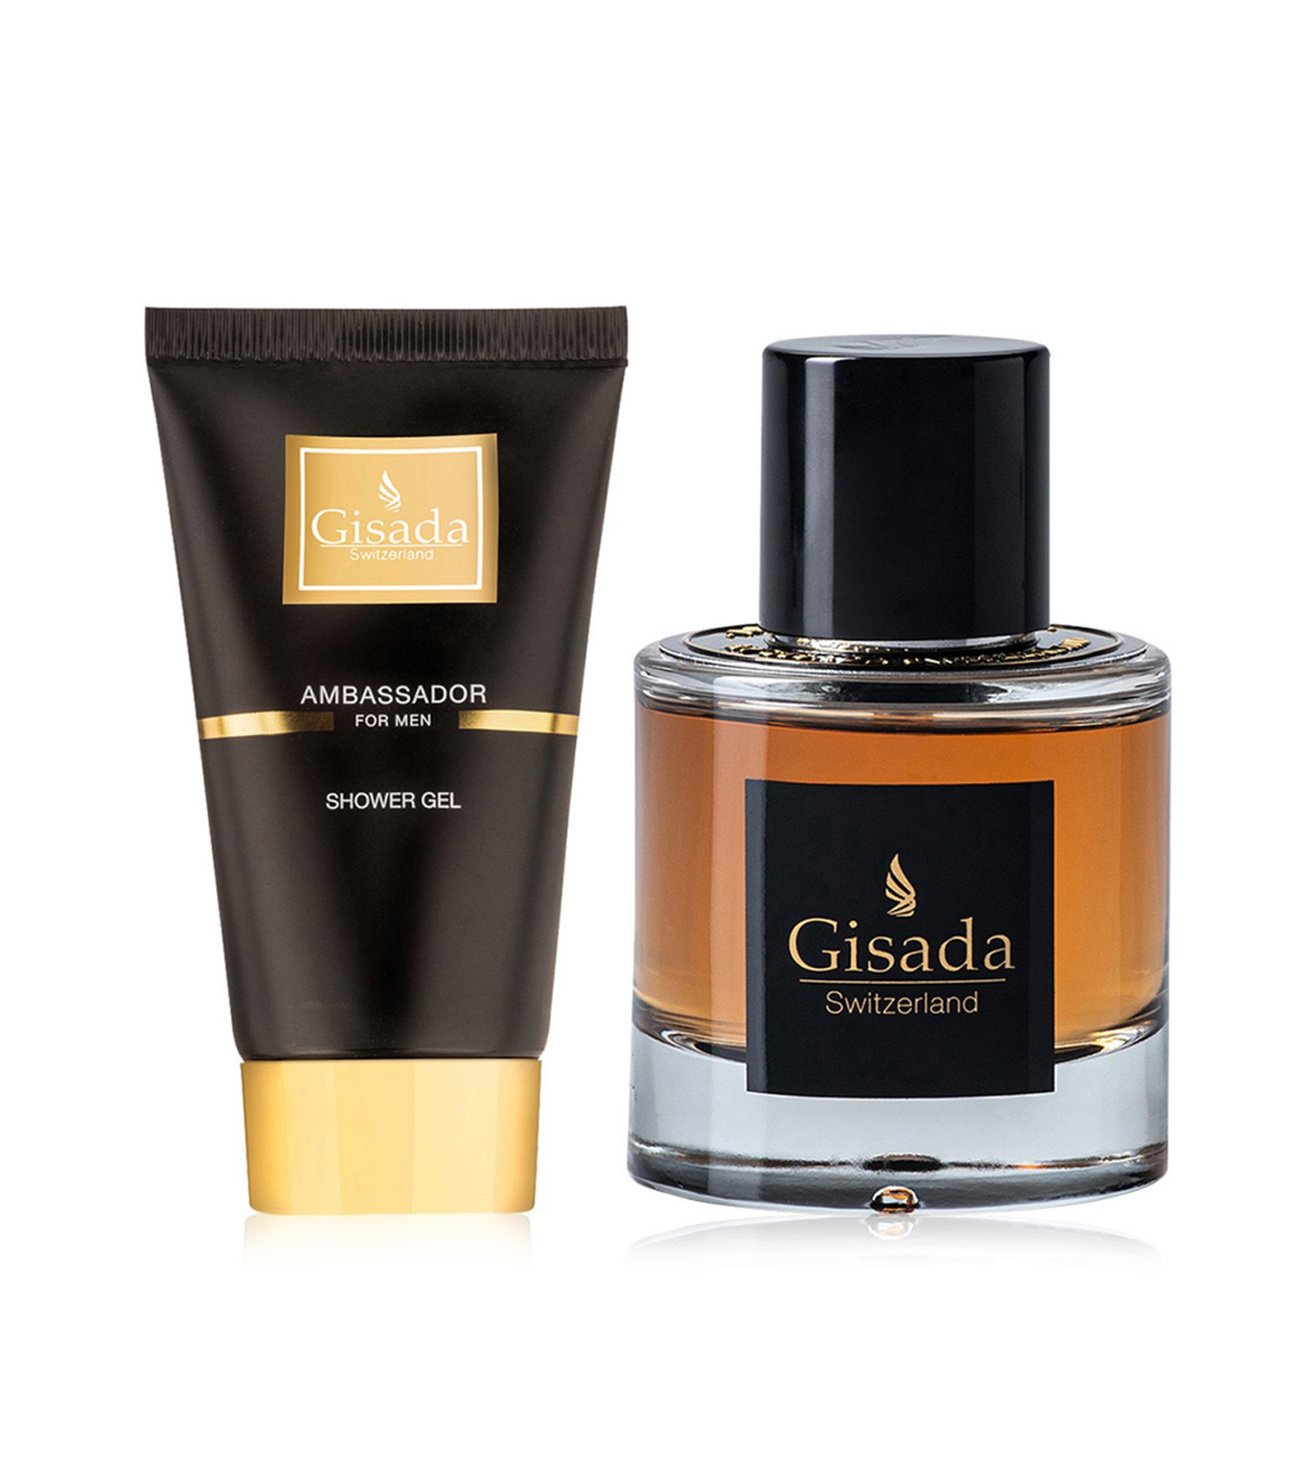 Buy Gisada Ambassador Gift Set for Men Online On Tata CLiQ Palette